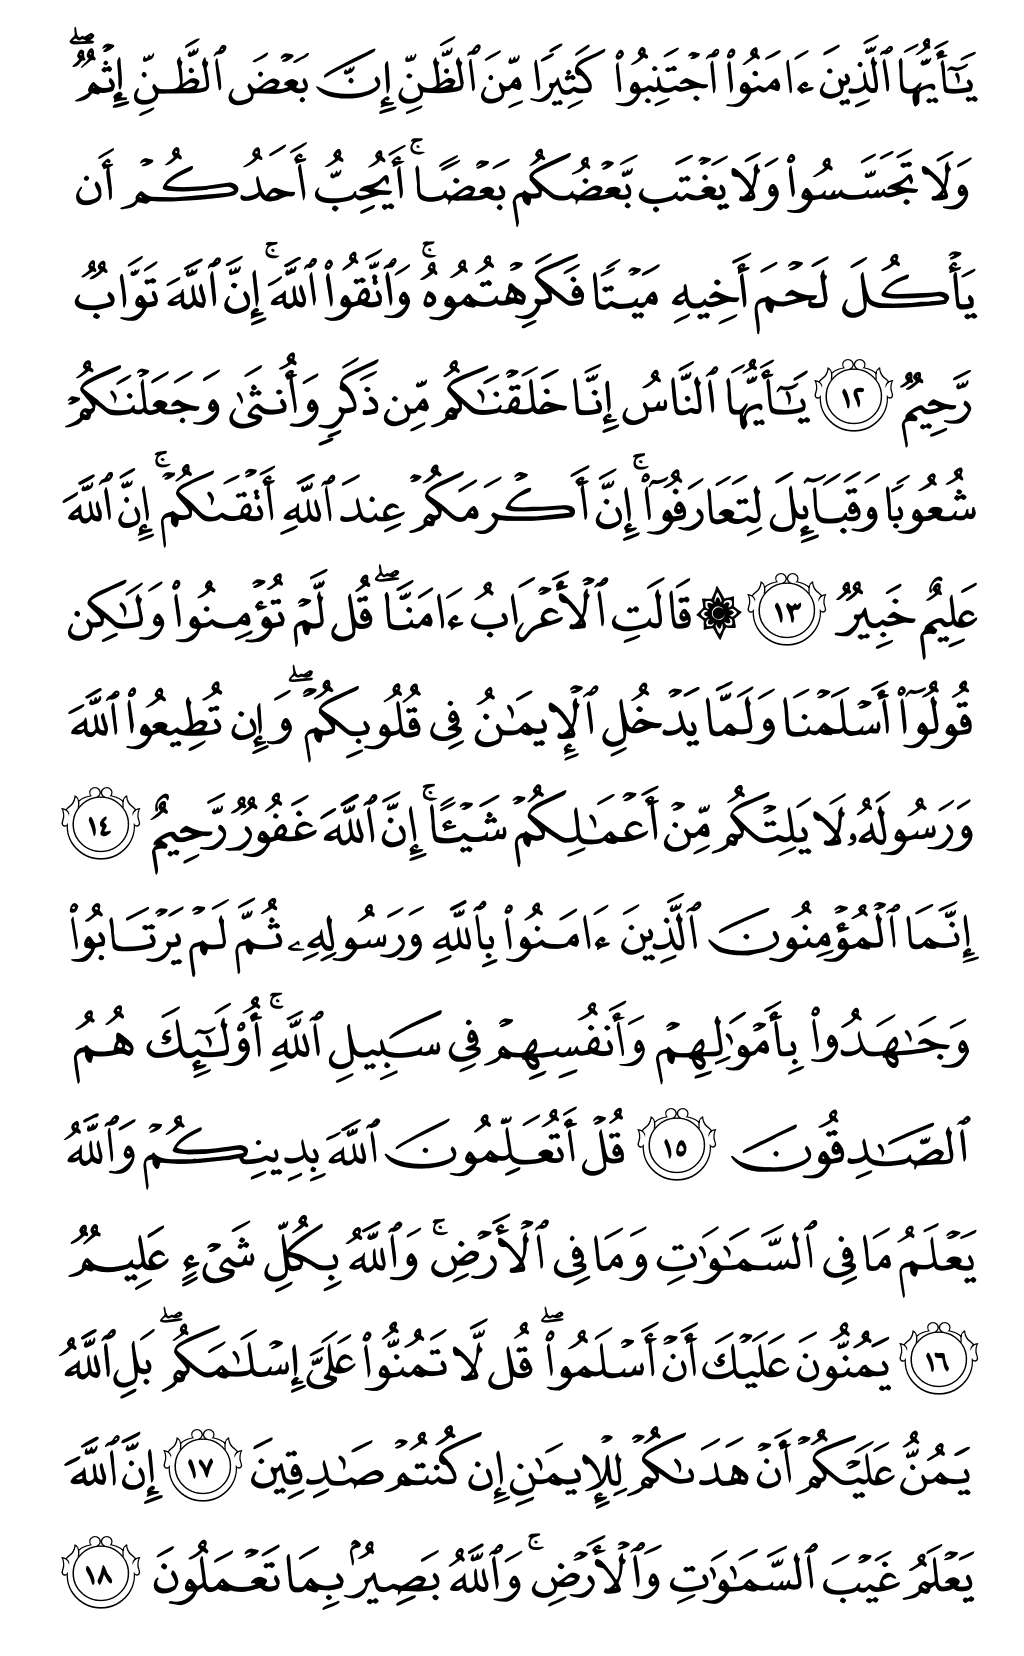 الصفحة رقم 517 من القرآن الكريم